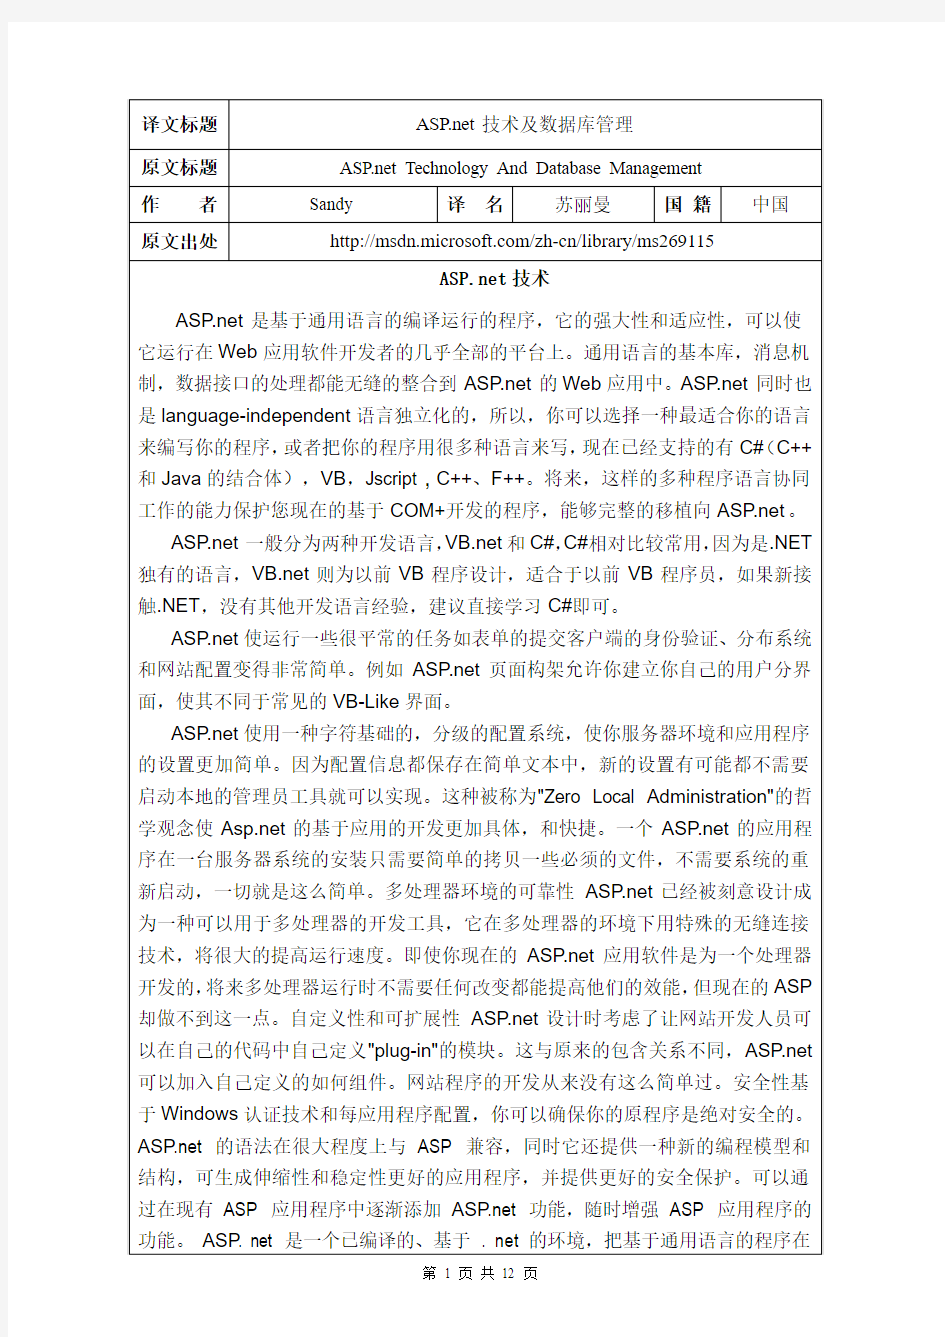 ASP和net技术及数据库管理外文原文+中文翻译